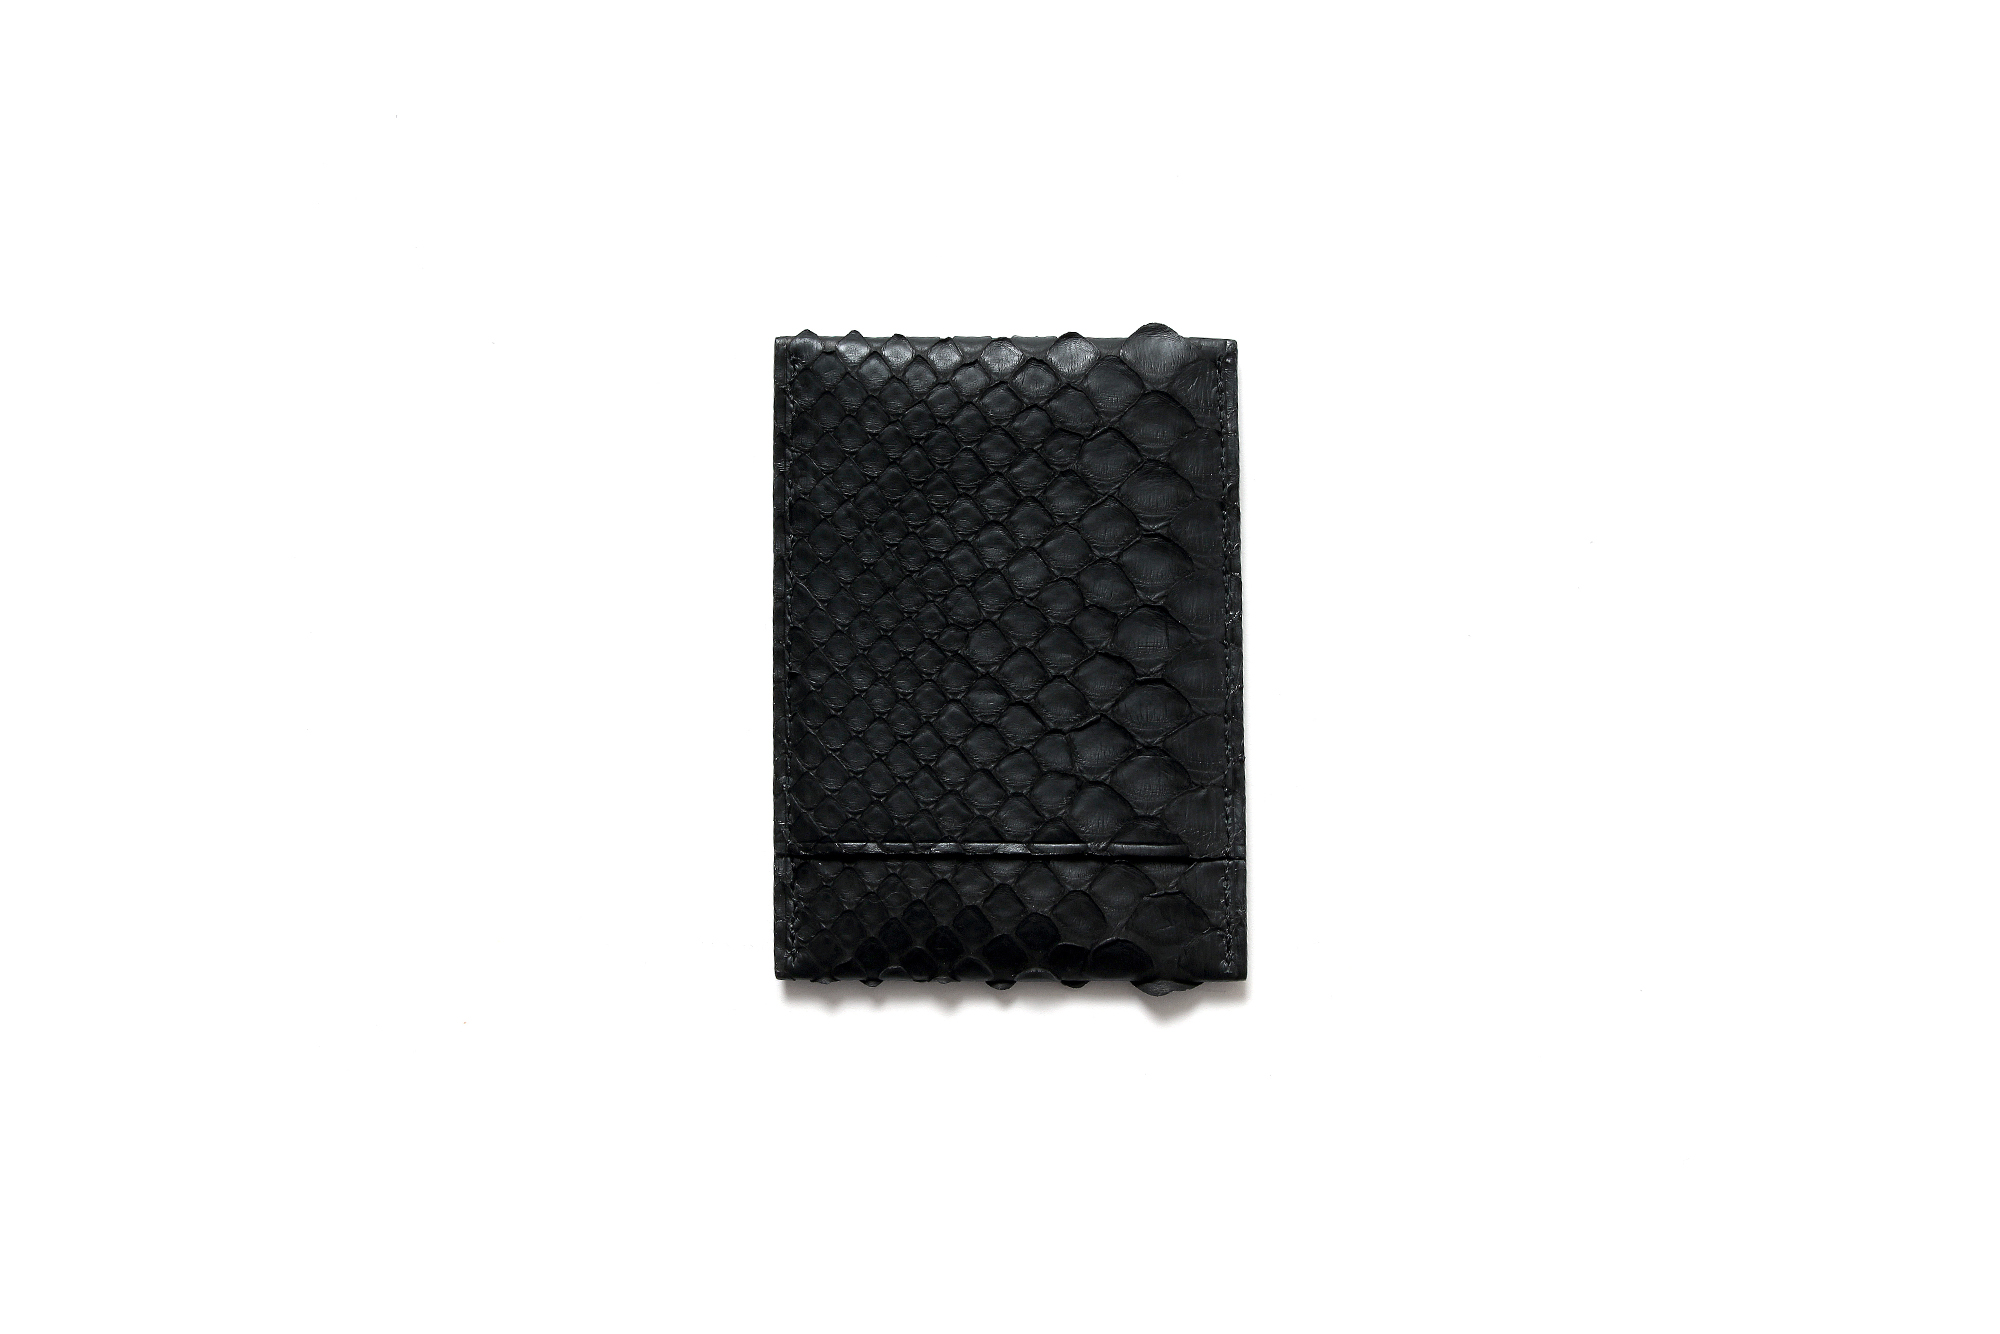 cuervo bopoha (クエルボ ヴァローナ) Thelonious (セロニアス) Python Leather (パイソンレザー) カードケース BLACK (ブラック) Made in Japan (日本製) 2021 愛知 名古屋 Alto e Diritto altoediritto アルトエデリット エキゾチックレザー